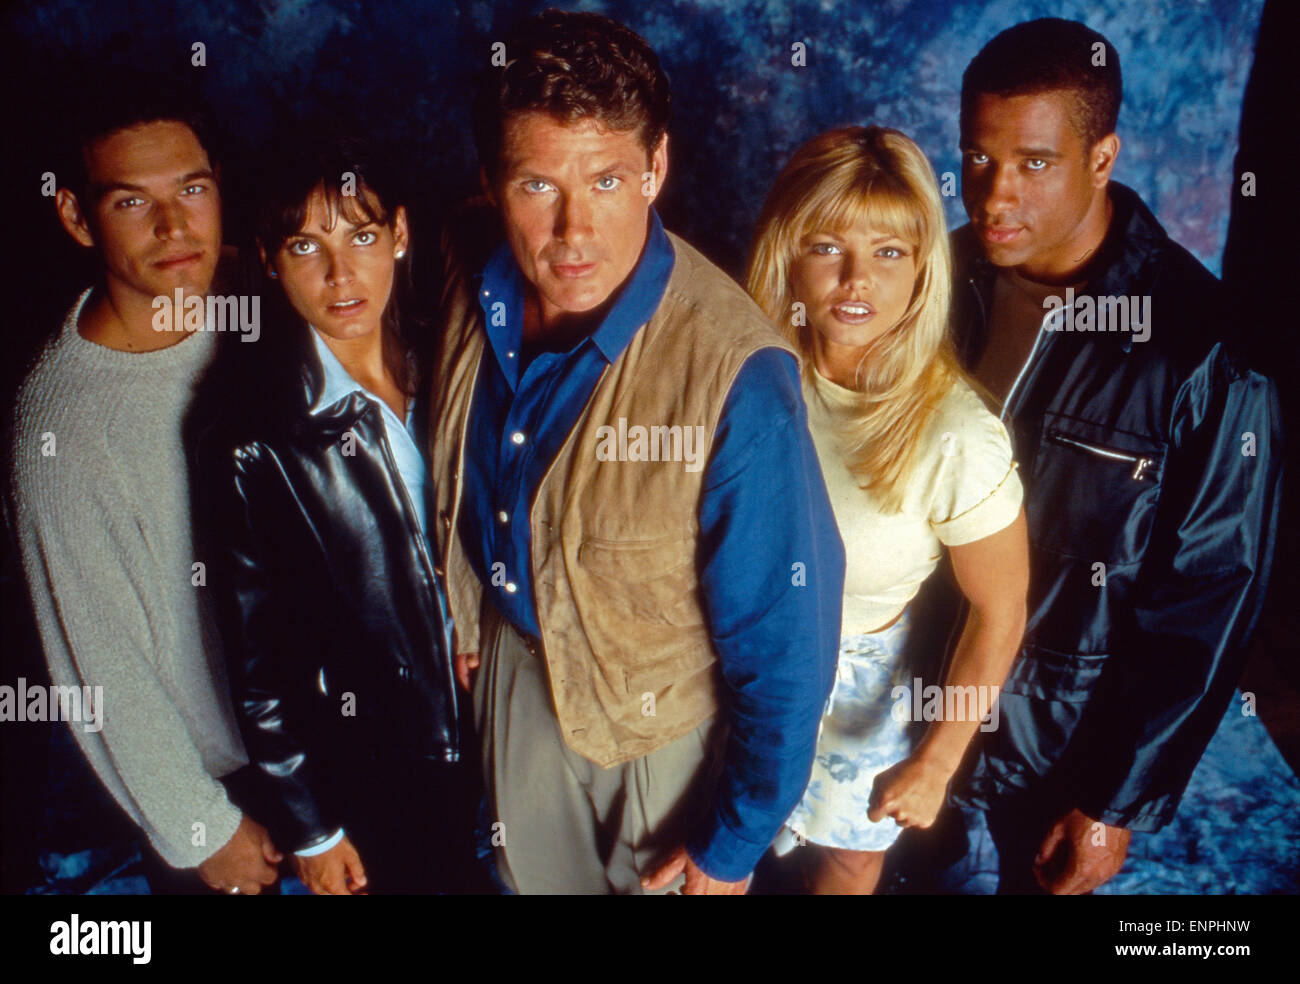 Baywatch Nights, Fernsehserie, USA 1995 - 1997, Darsteller: Eddie Cibrian, Angie Harmon, David Hasselhoff, Donna D'Errico, Grego Stock Photo